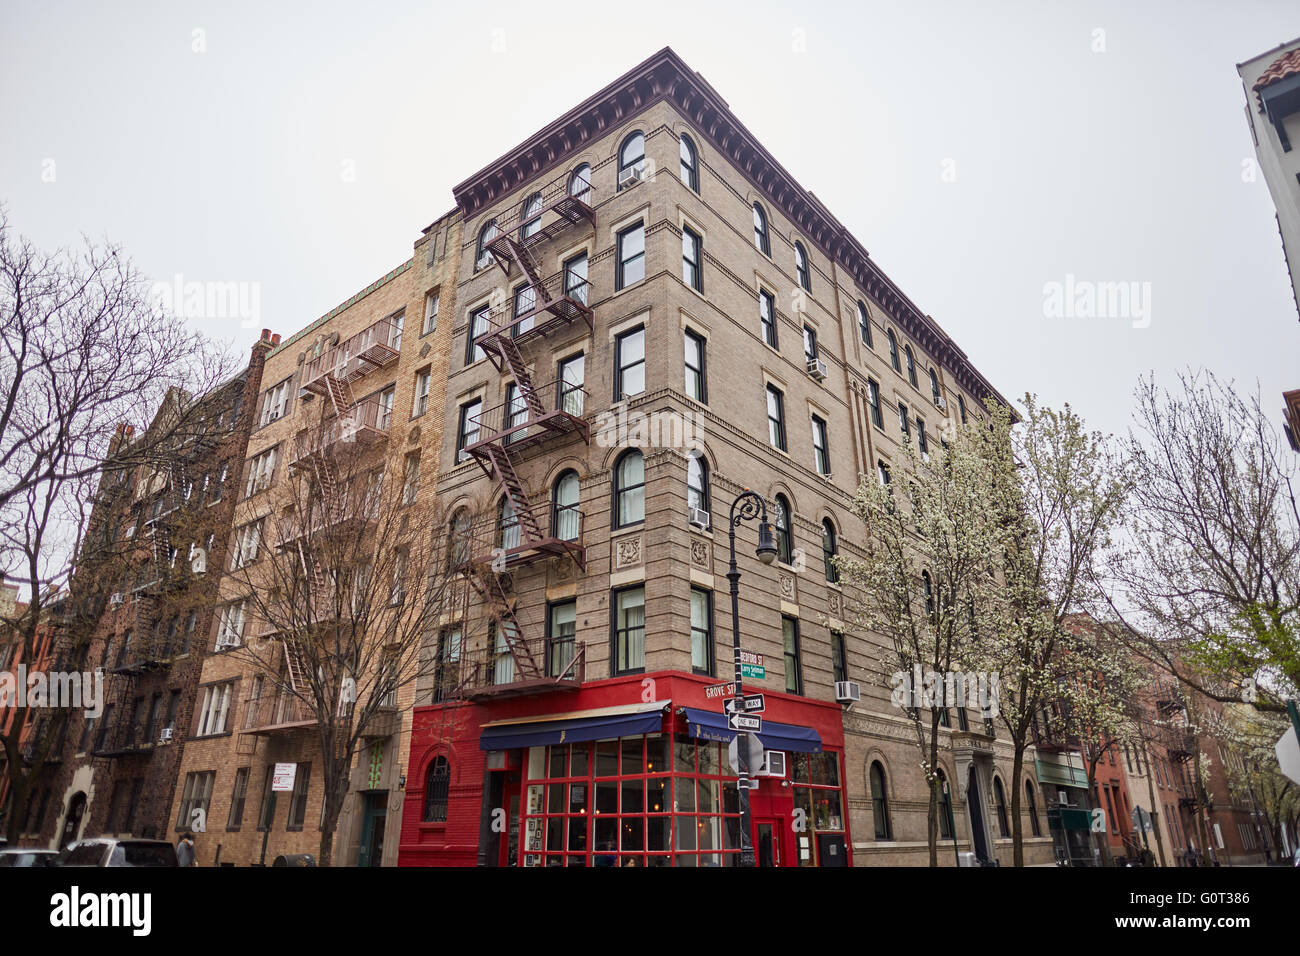 El Meatpacking District de Nueva York amigos TV drama show sitcom apartamento ubicación exterior bedford street Grove Street cafe bajo Foto de stock